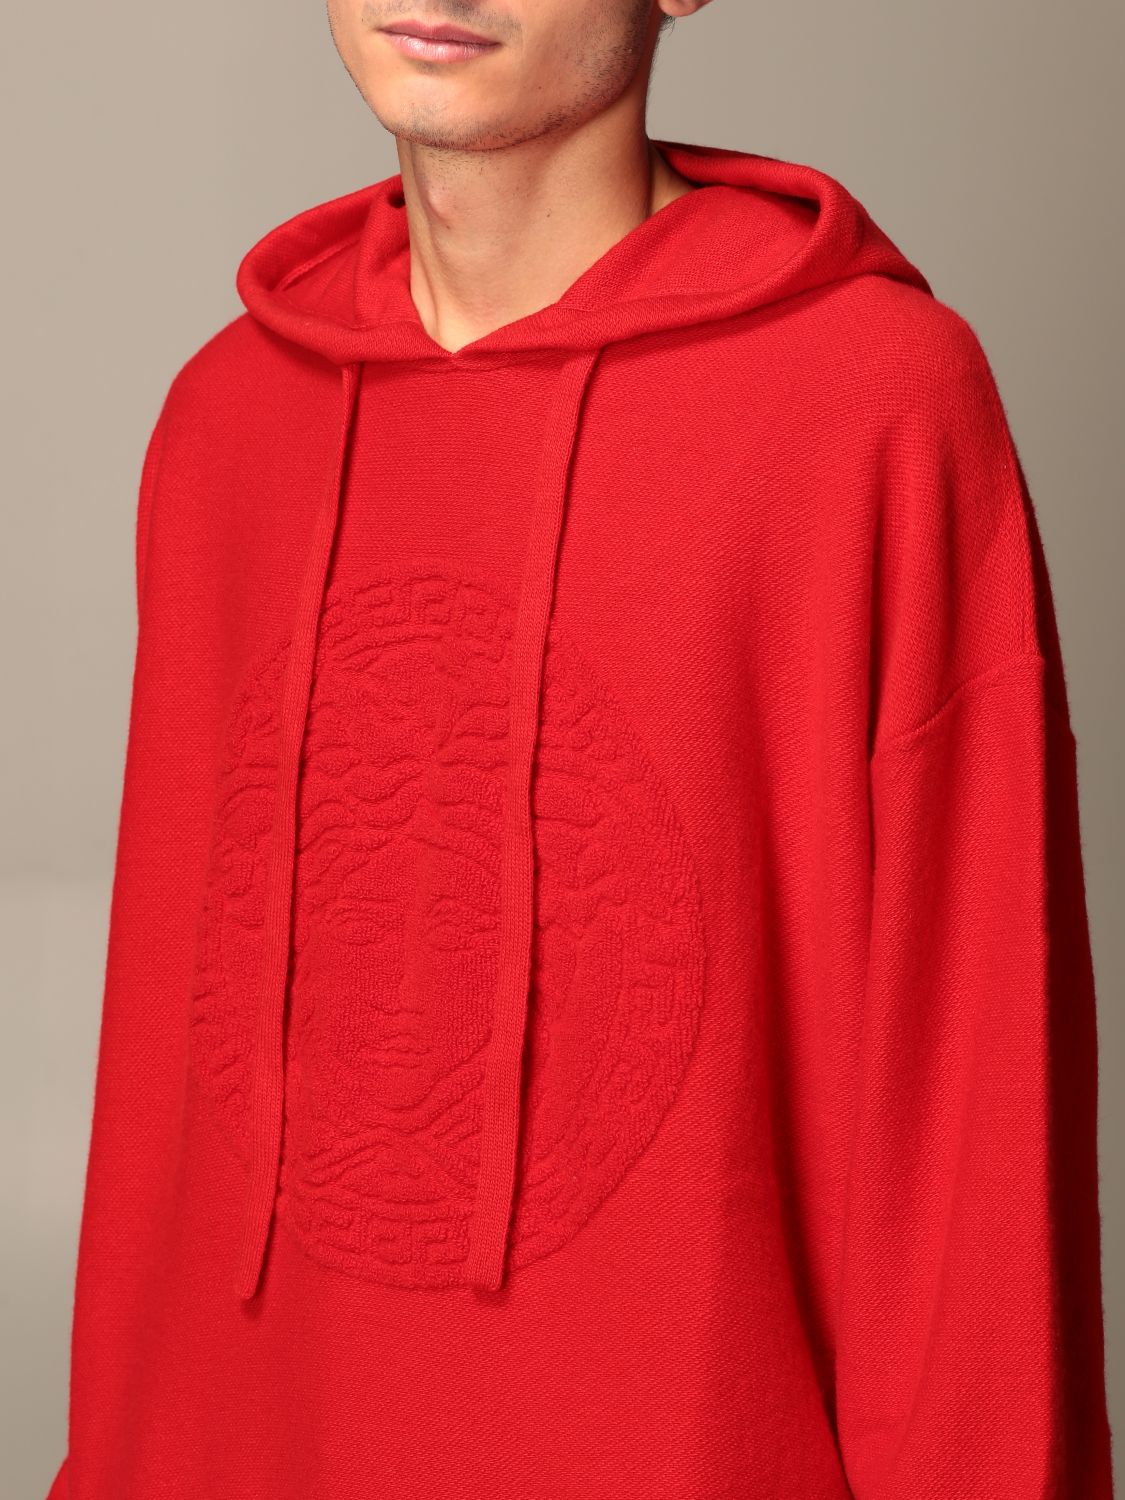 red versace hoodie